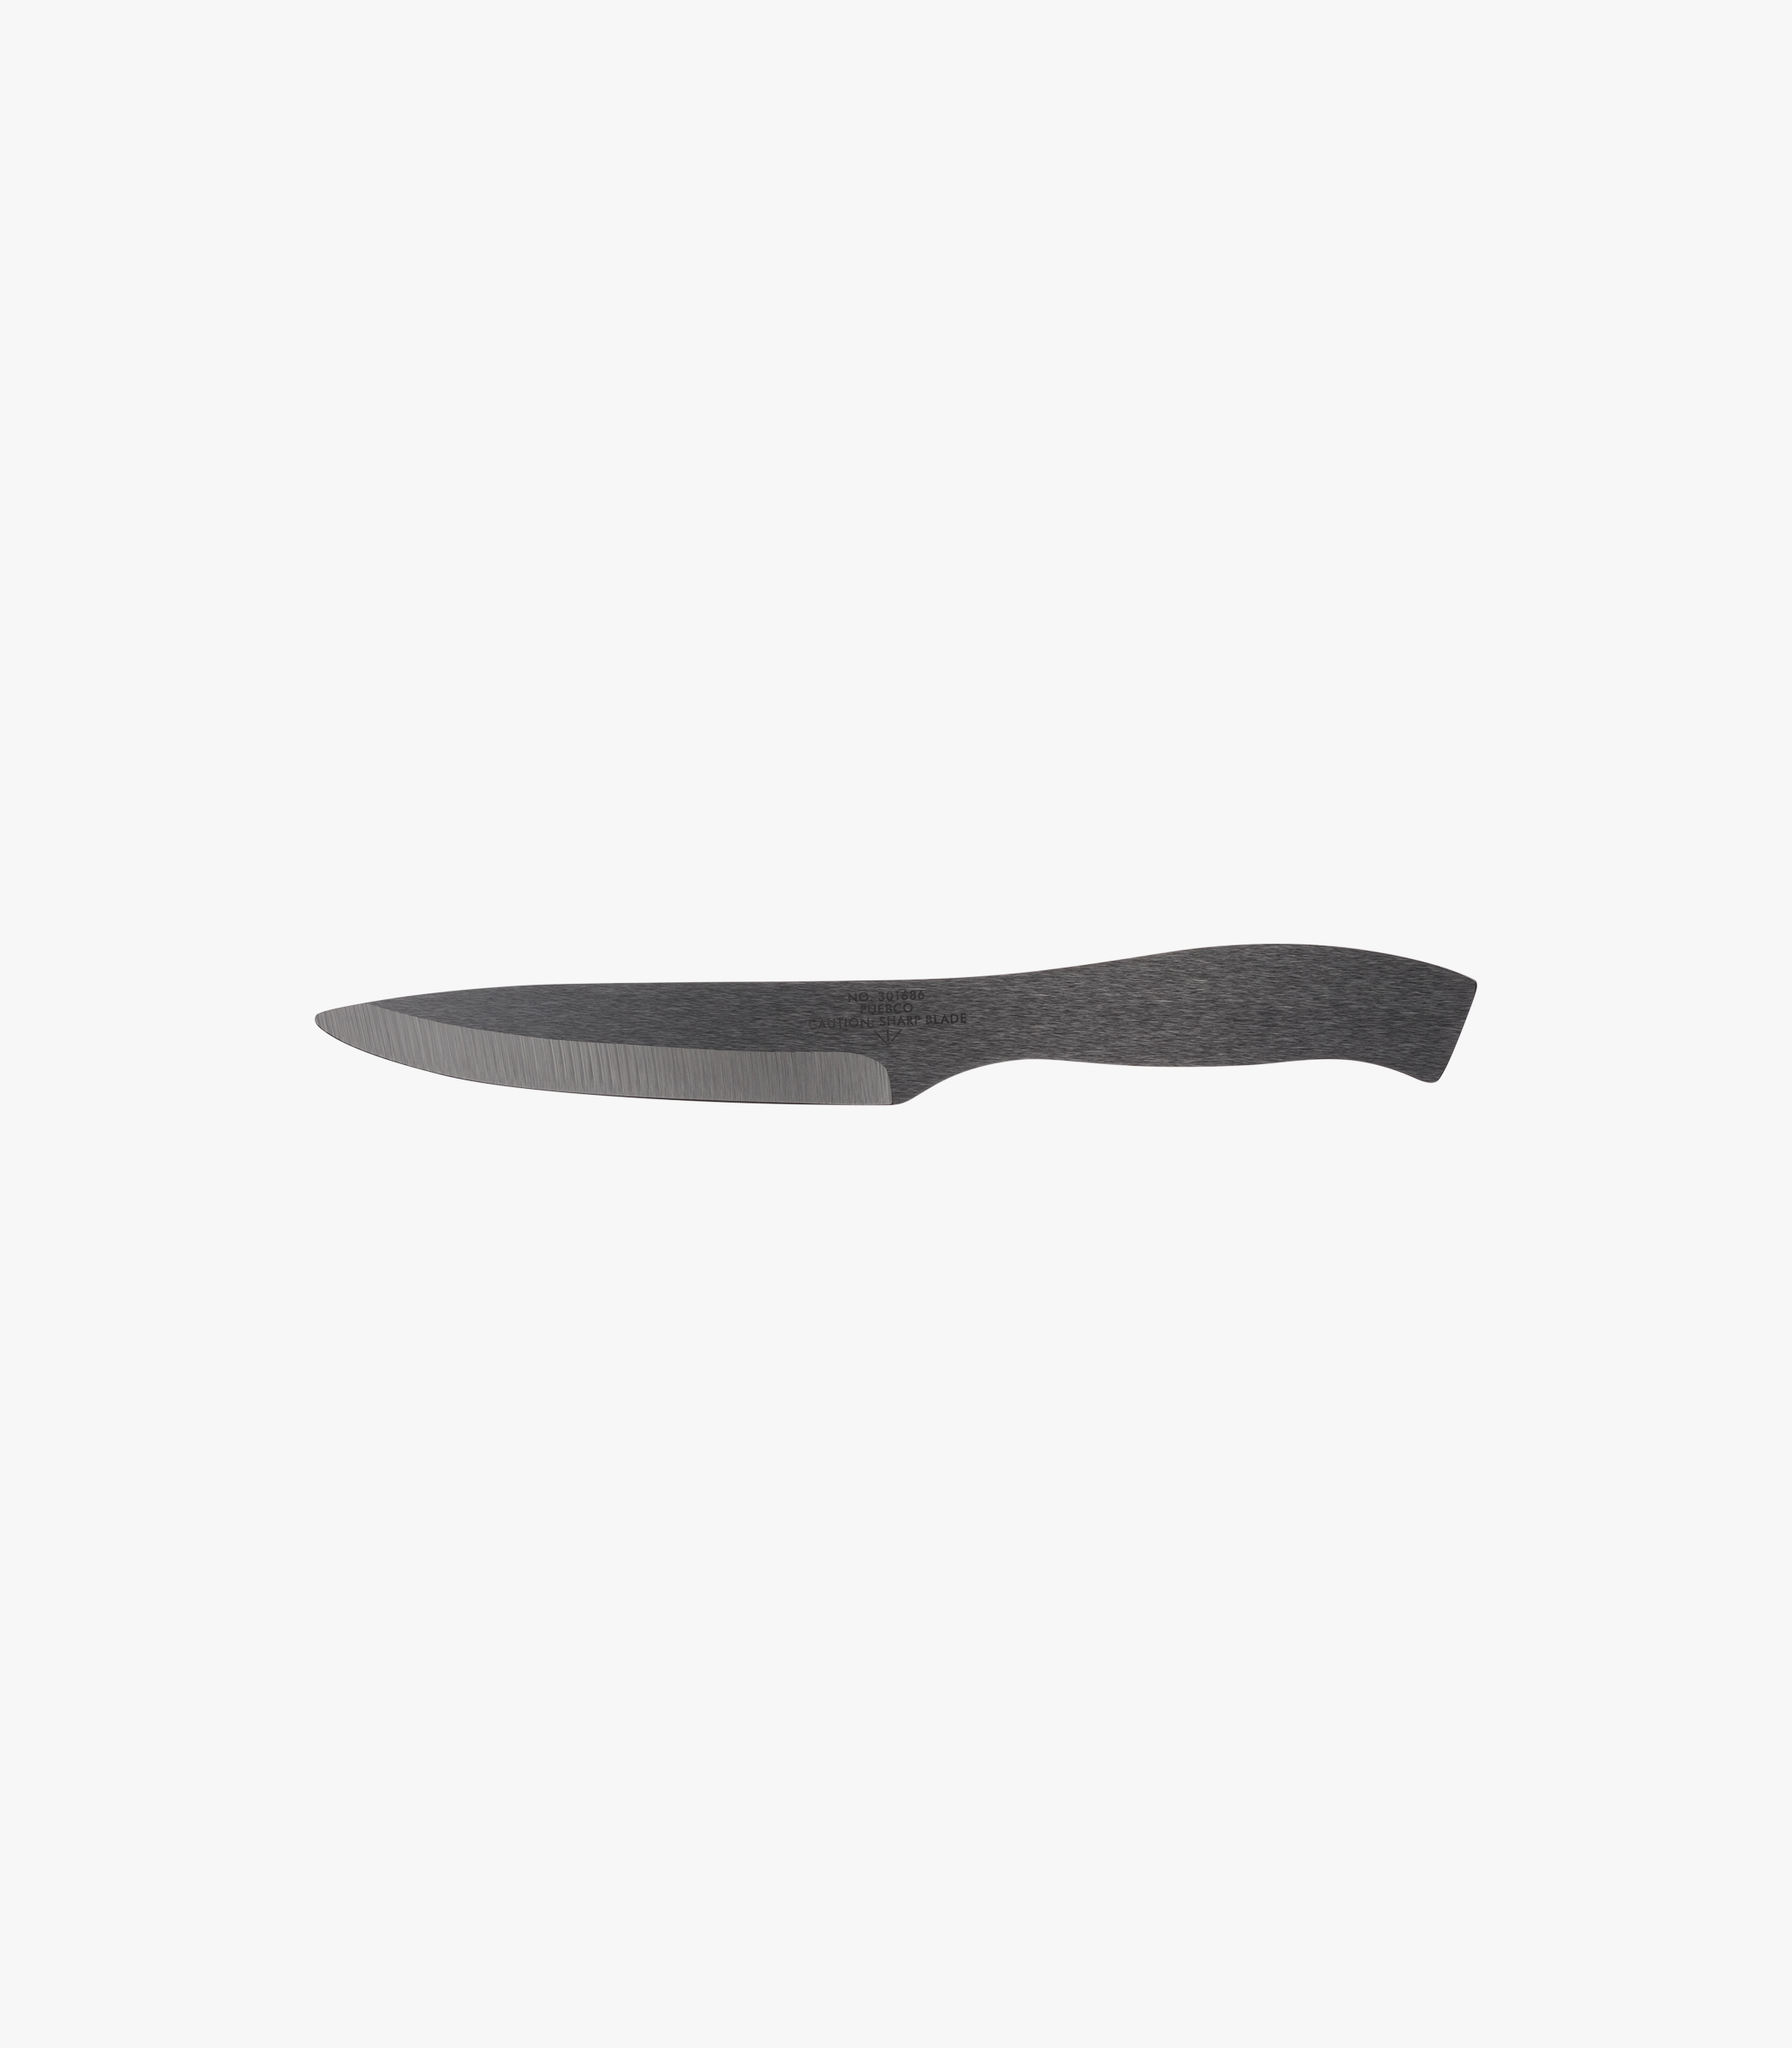 Puebco Ceramic Paring Knife Black – Knickerbocker